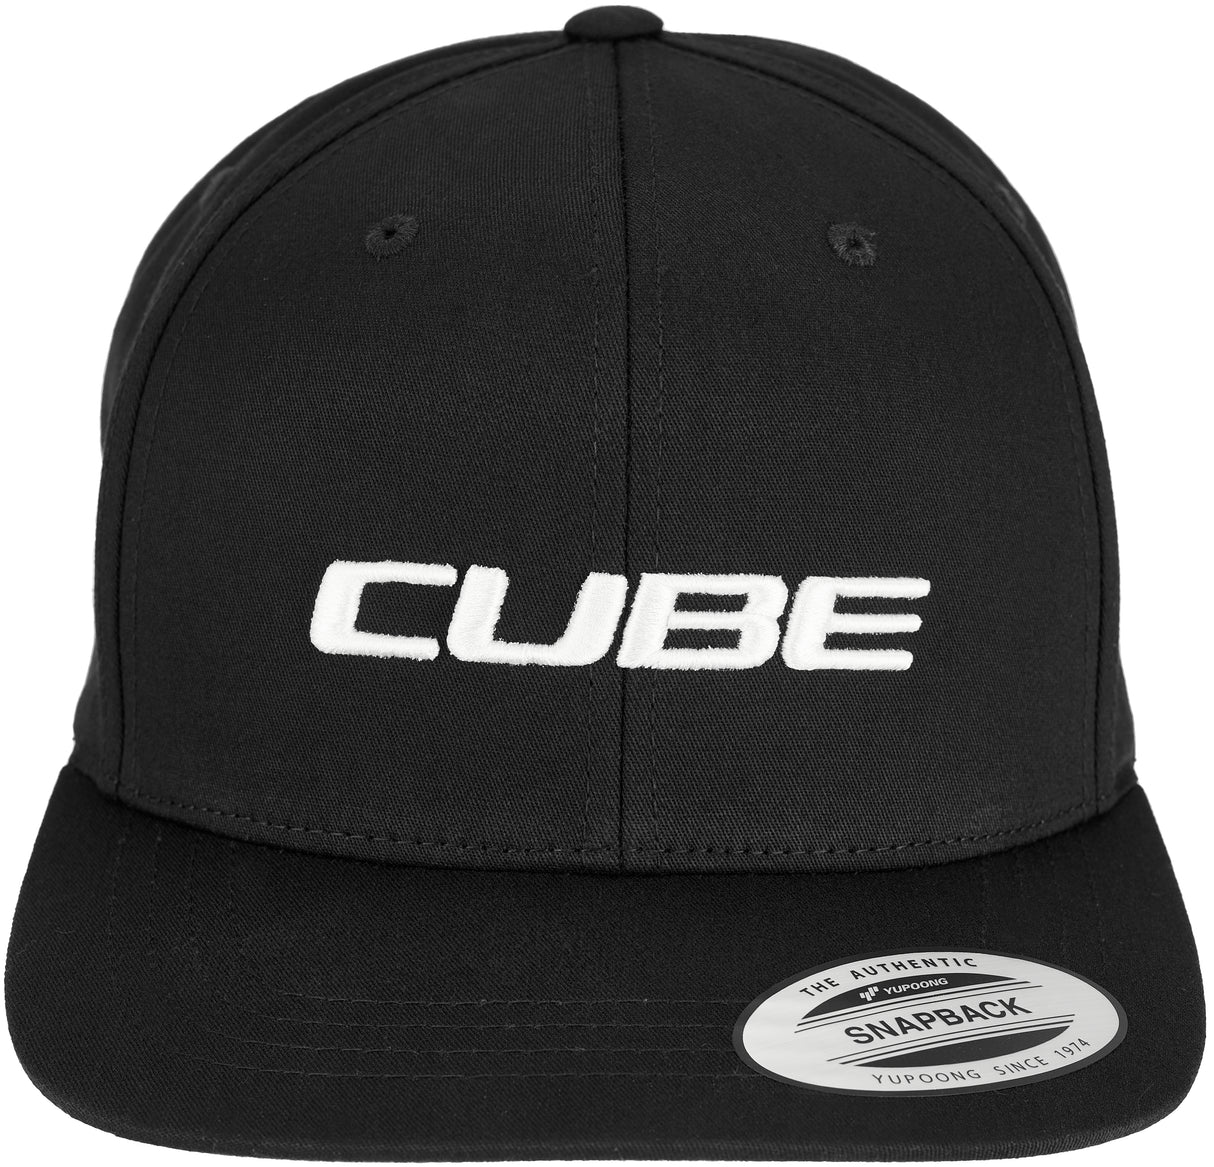 CUBE Cap 6 Panel Classic